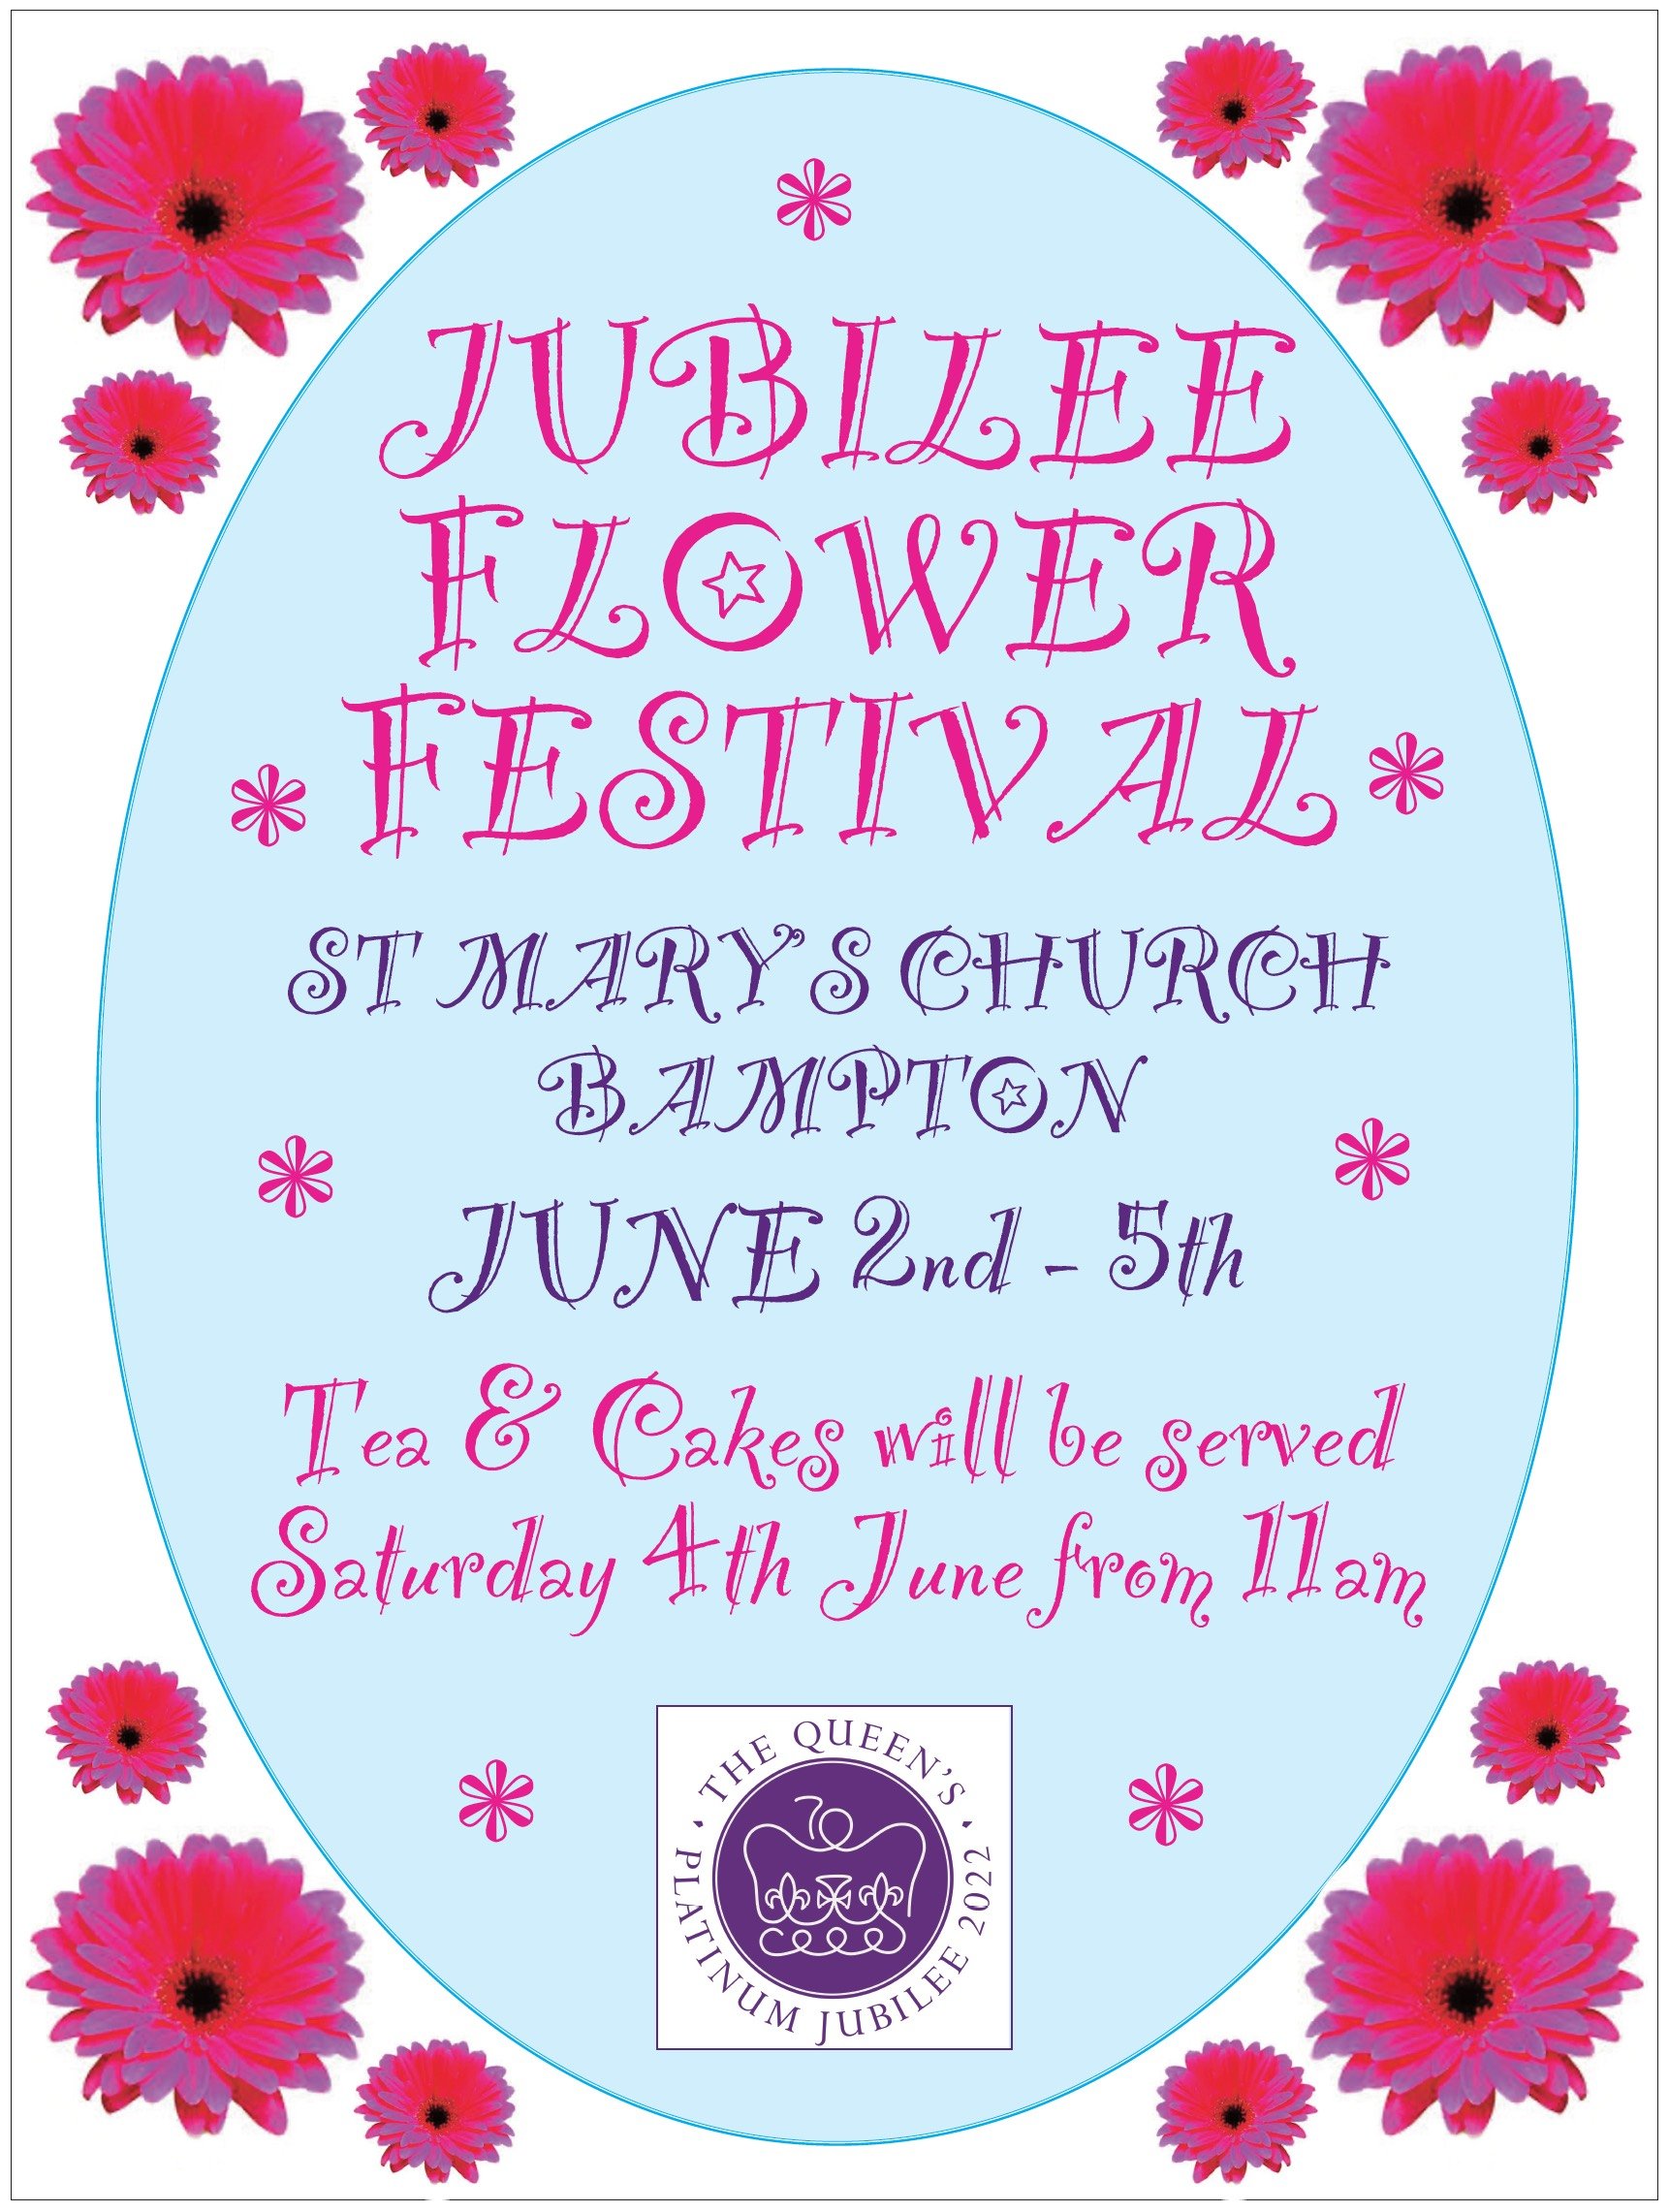 Jubilee Flower Festival